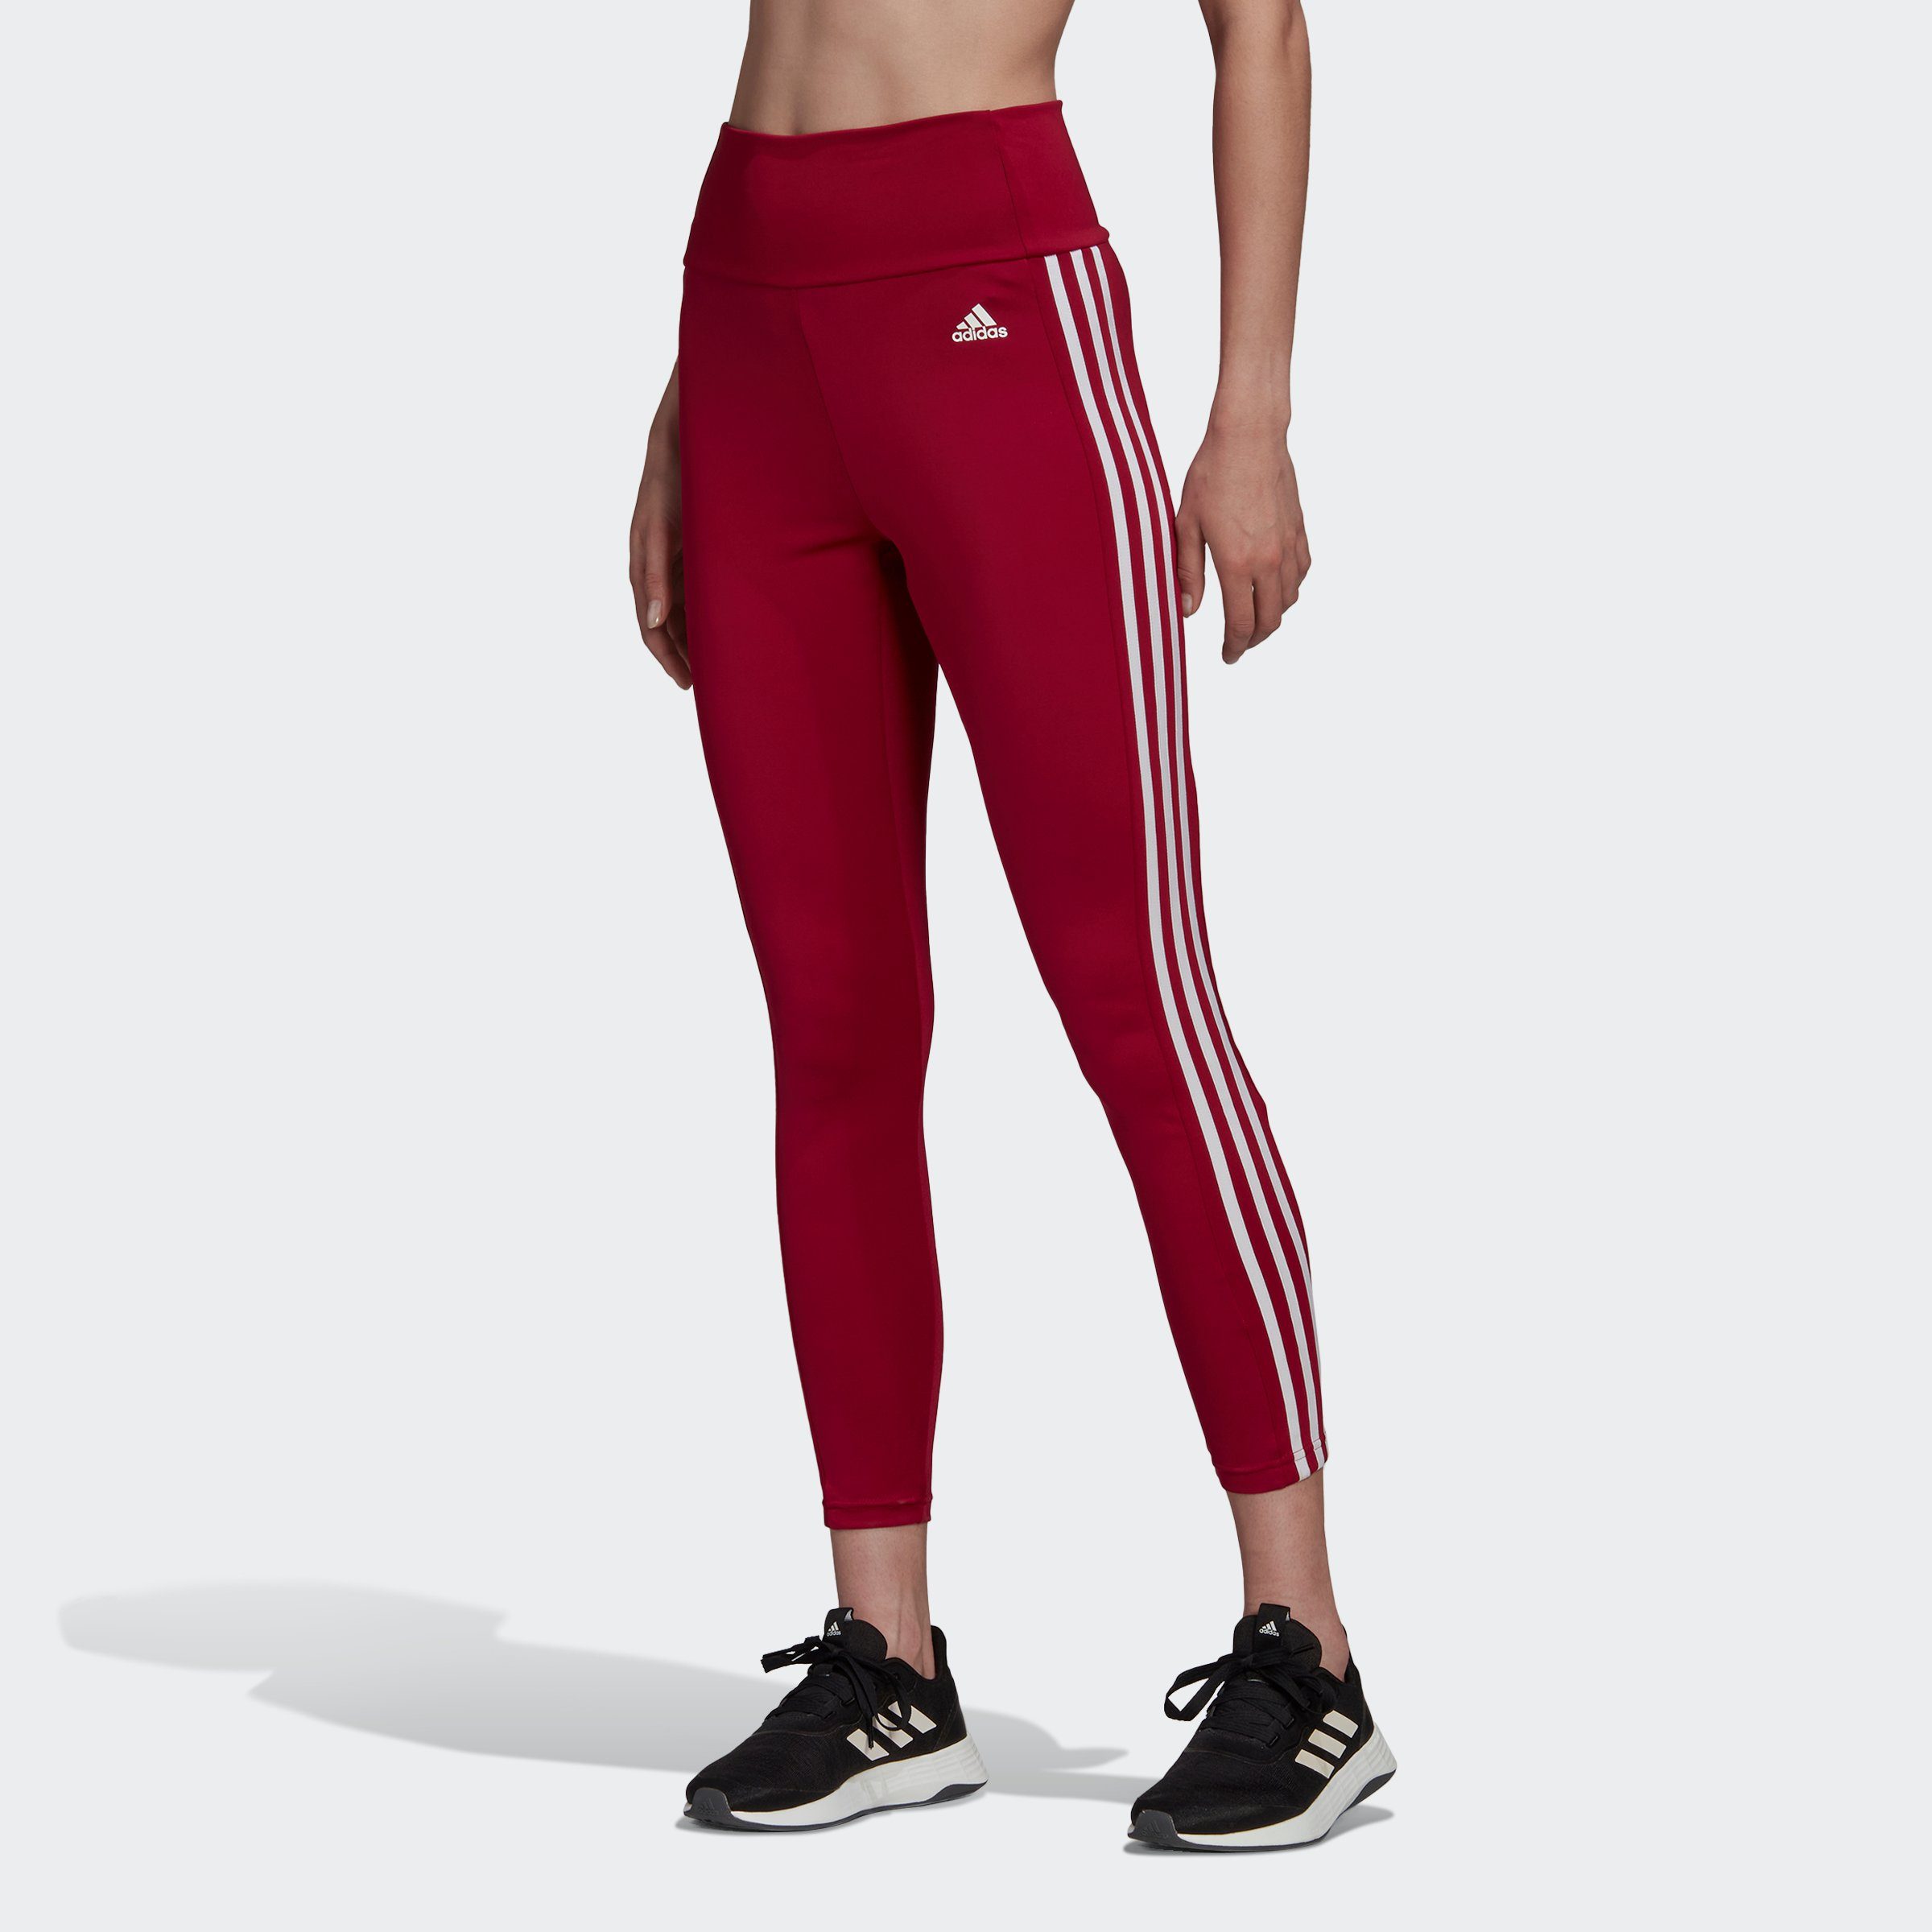 Rote adidas Damen Trainingshosen online kaufen | OTTO